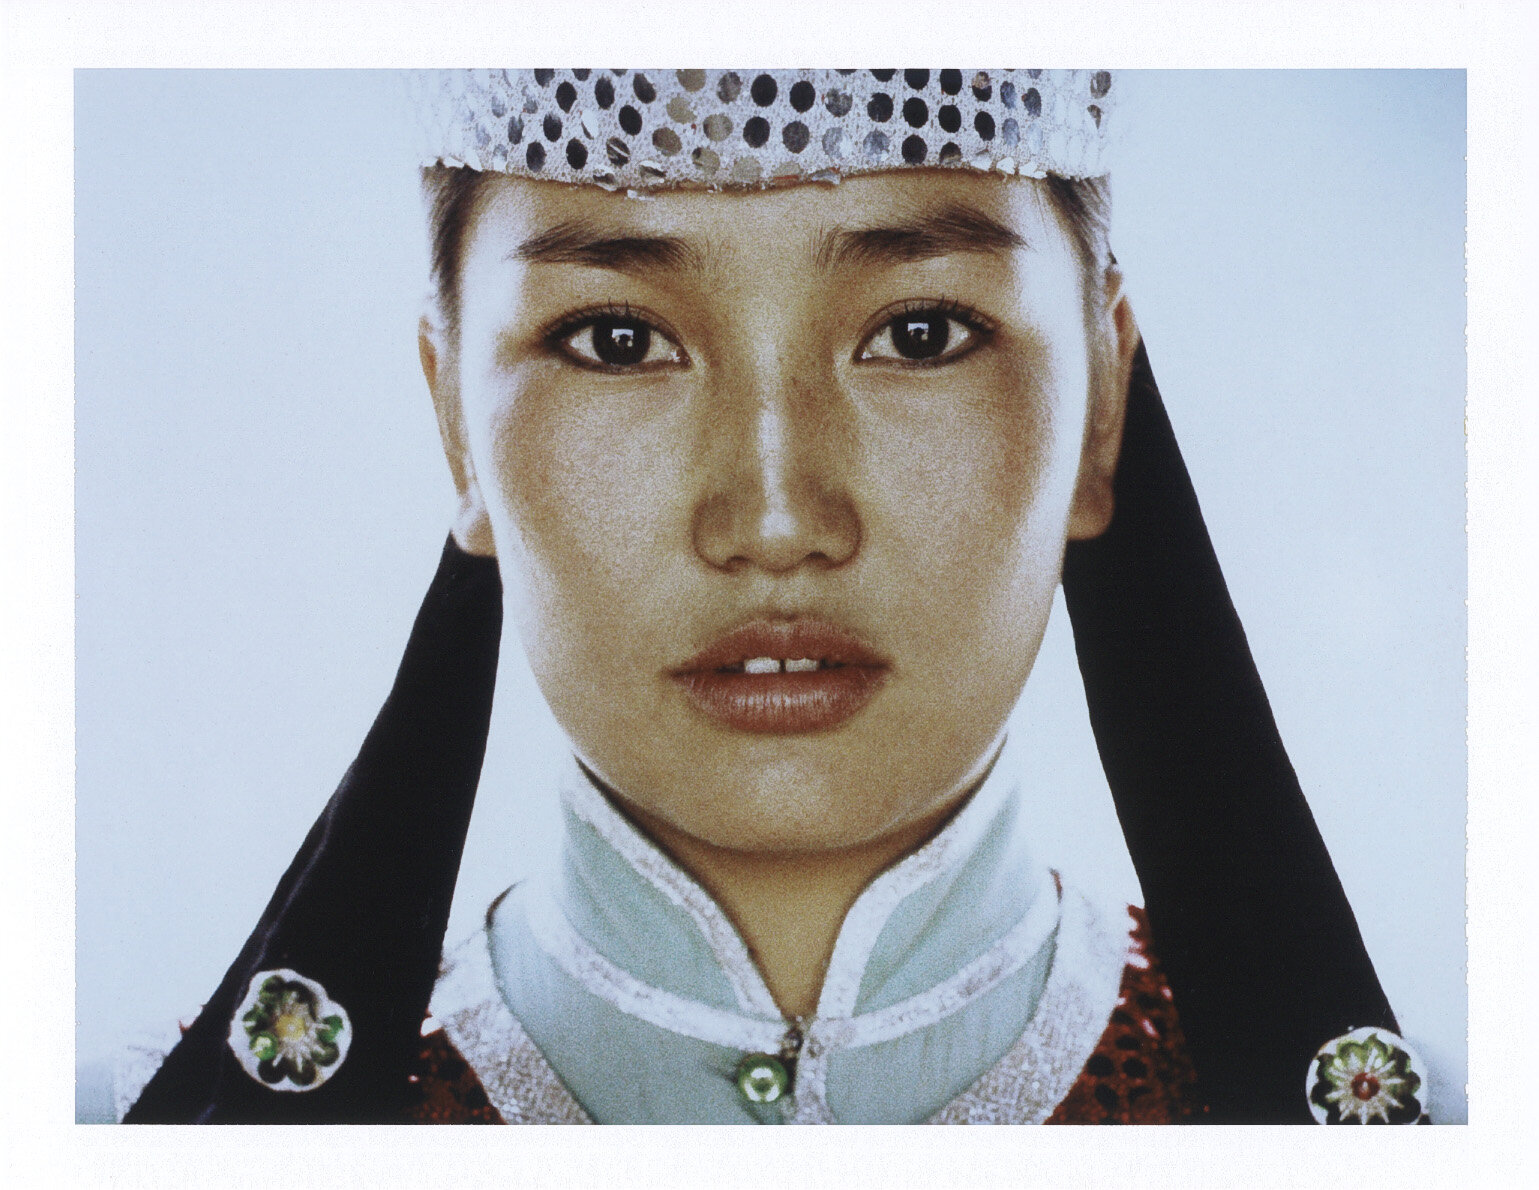 Zhula_Mongolia-1996.jpg